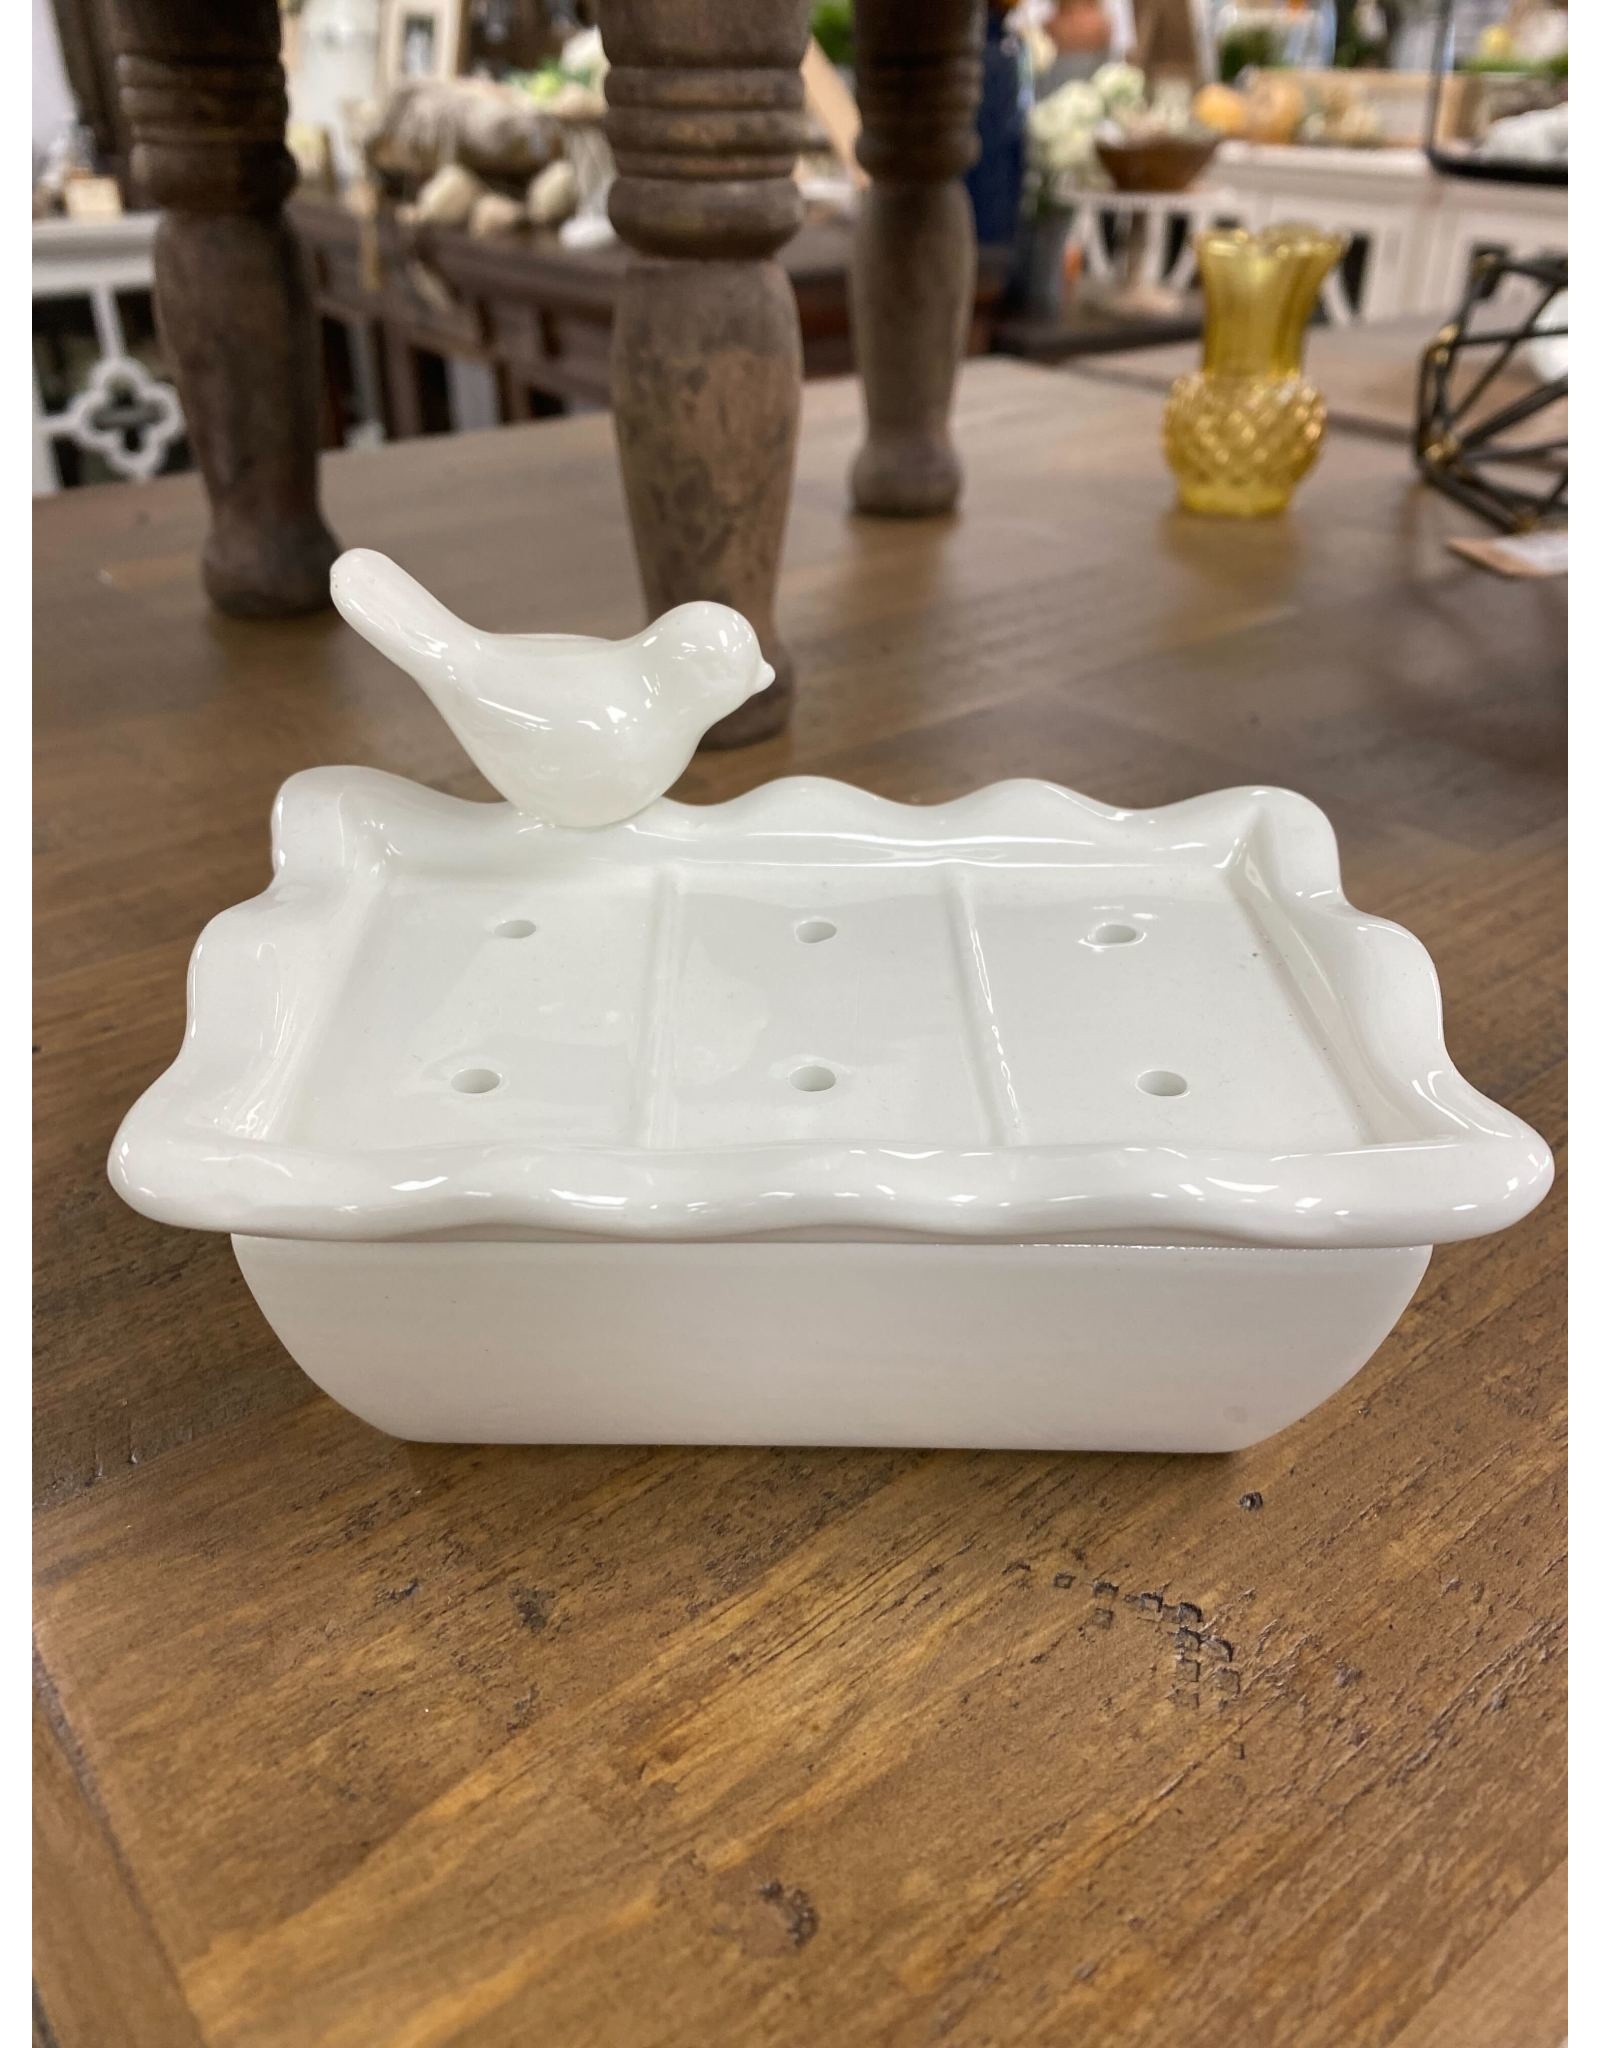 DE1351 Ceramic Soap Dish W/ Removable Tray w/ Bird- Wht